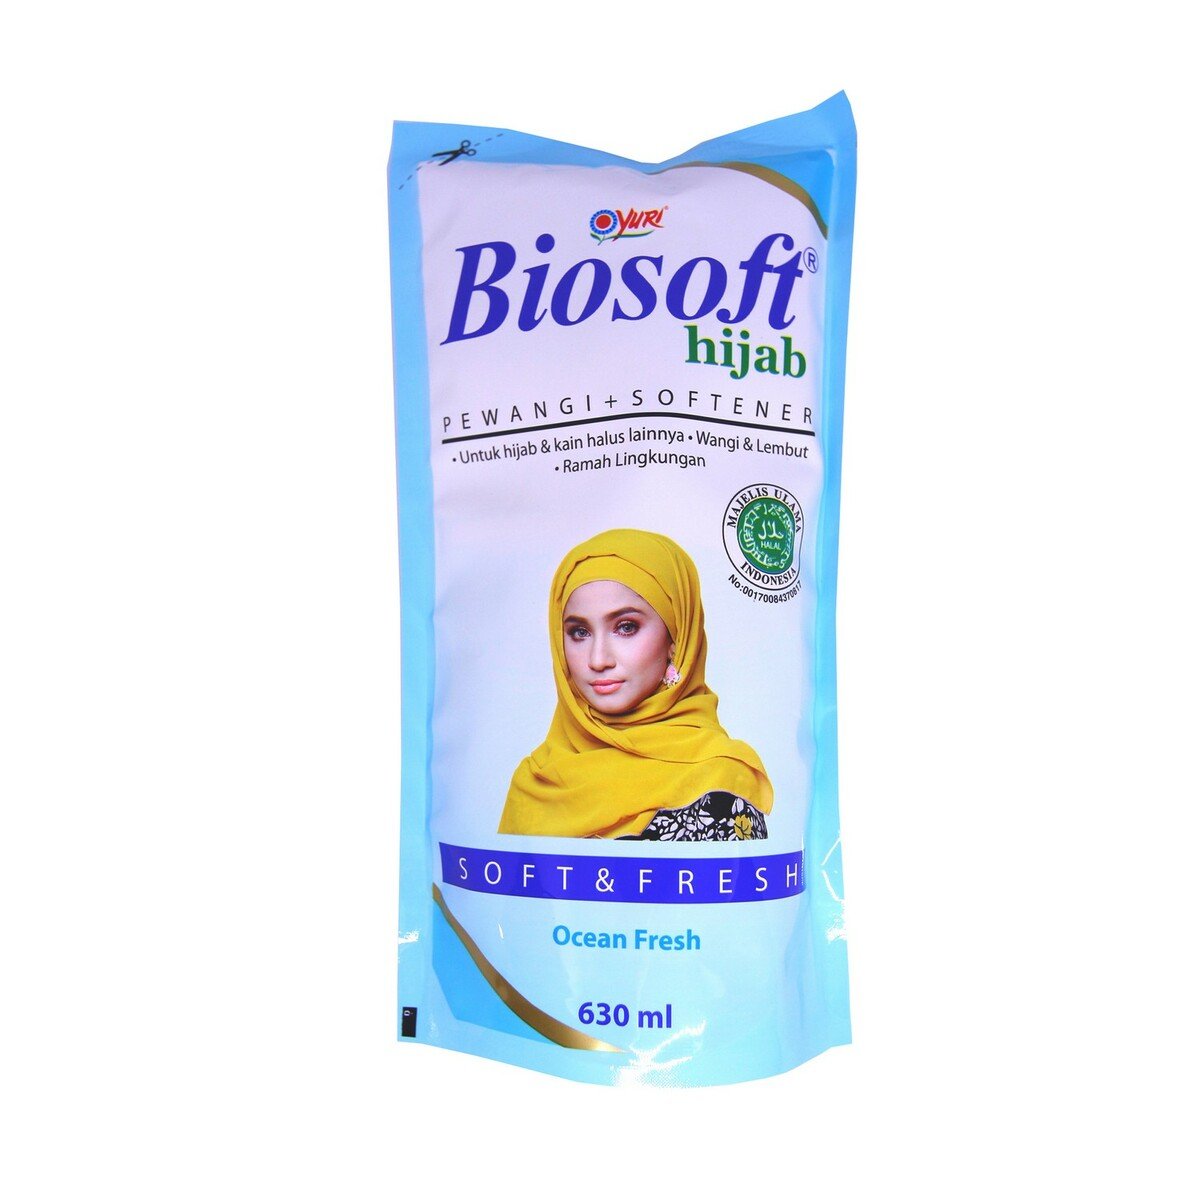 Biosoft Hijab Detergen Softener Ocean Fresh Pouch 630ml